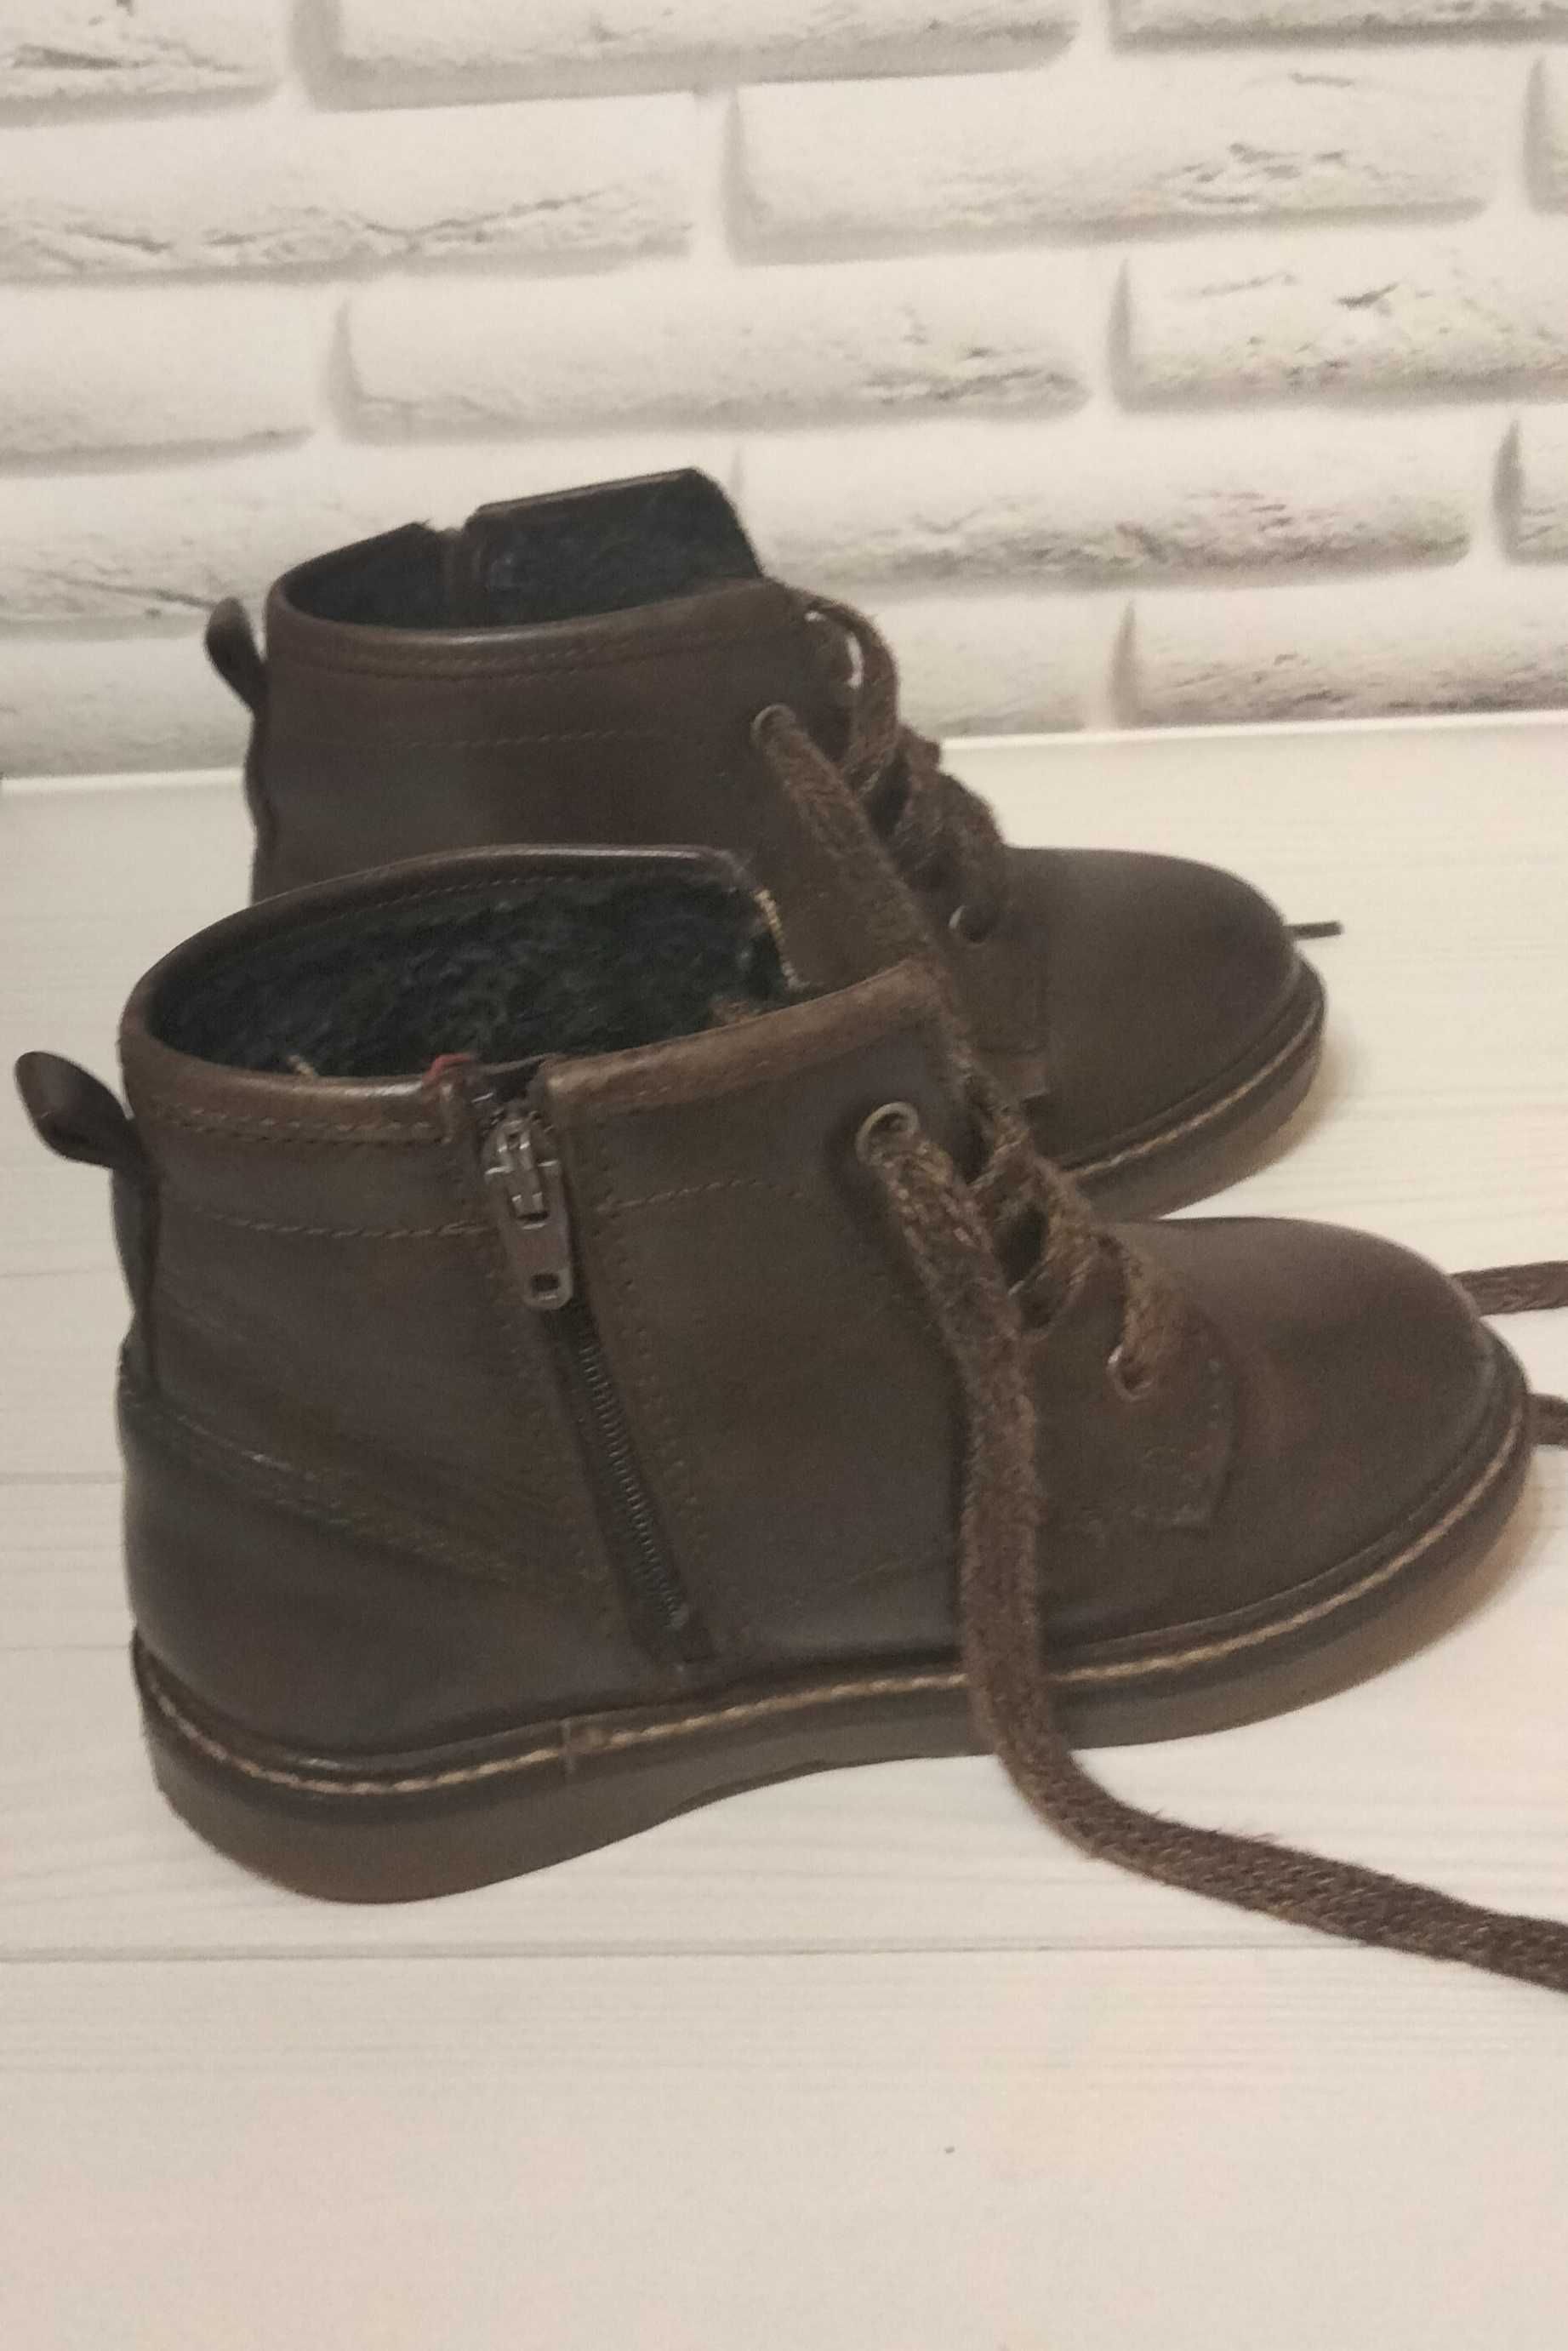 Демисезонные кожаные ботинки Zara baby (26 размер) для мальчика